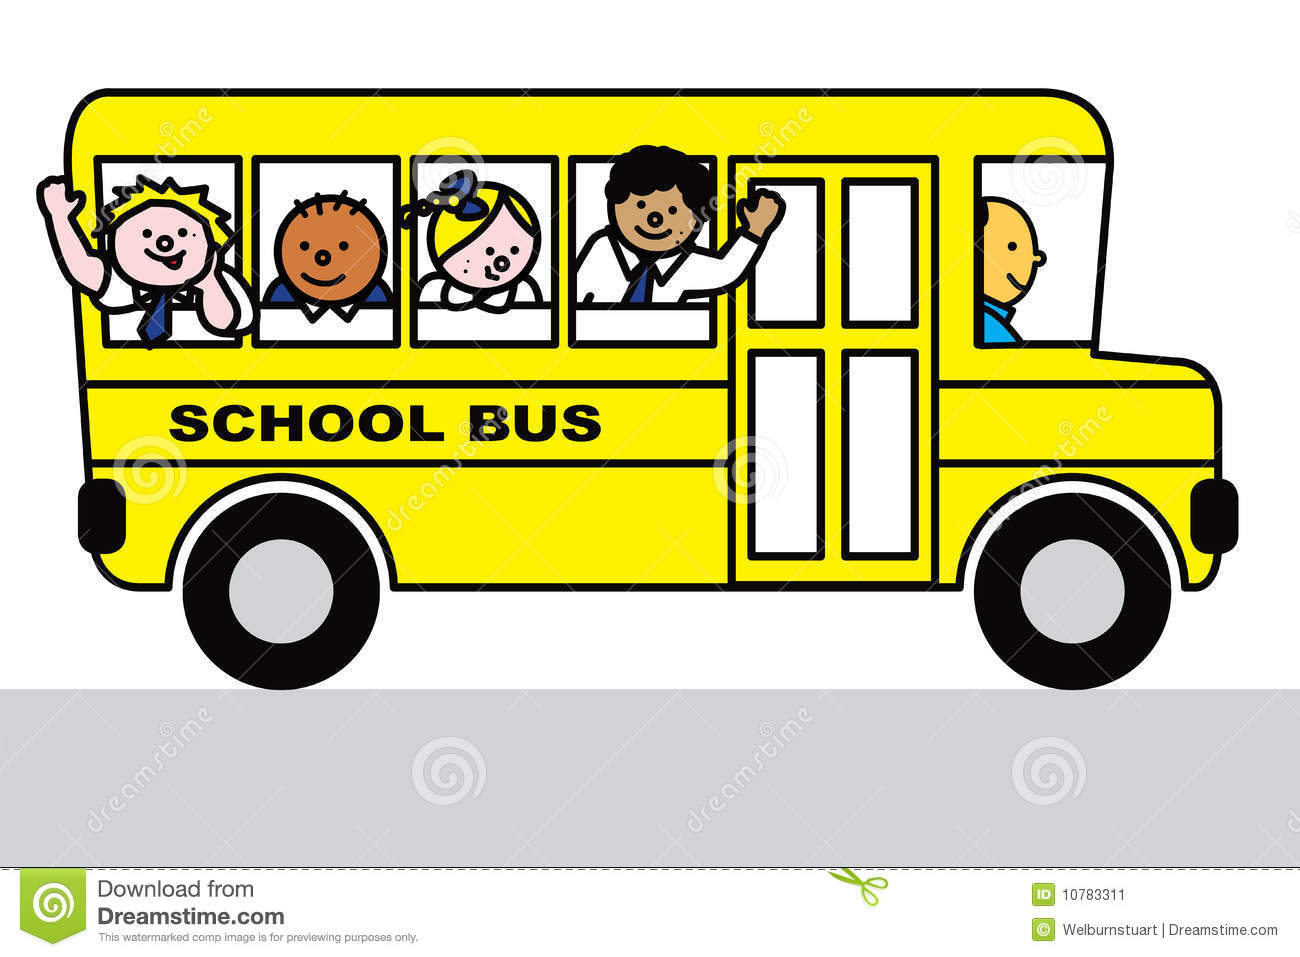 Manifestazione d'interesse per affidamento servizio conduzione scuolabus